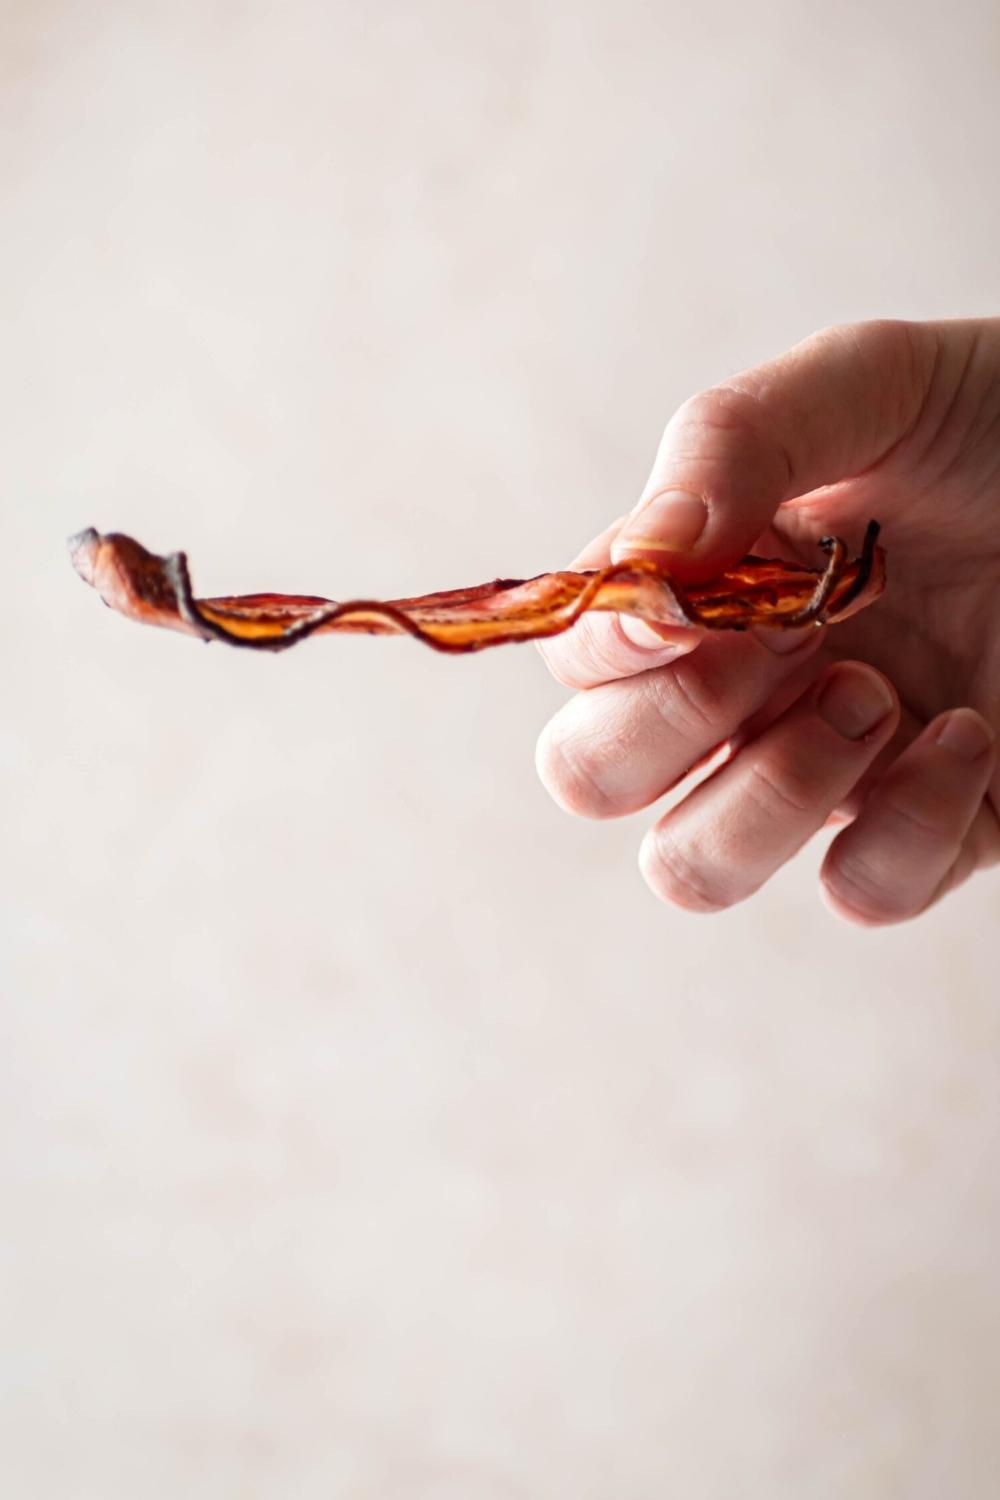 A hand holing a slice of turkey bacon horizontally.